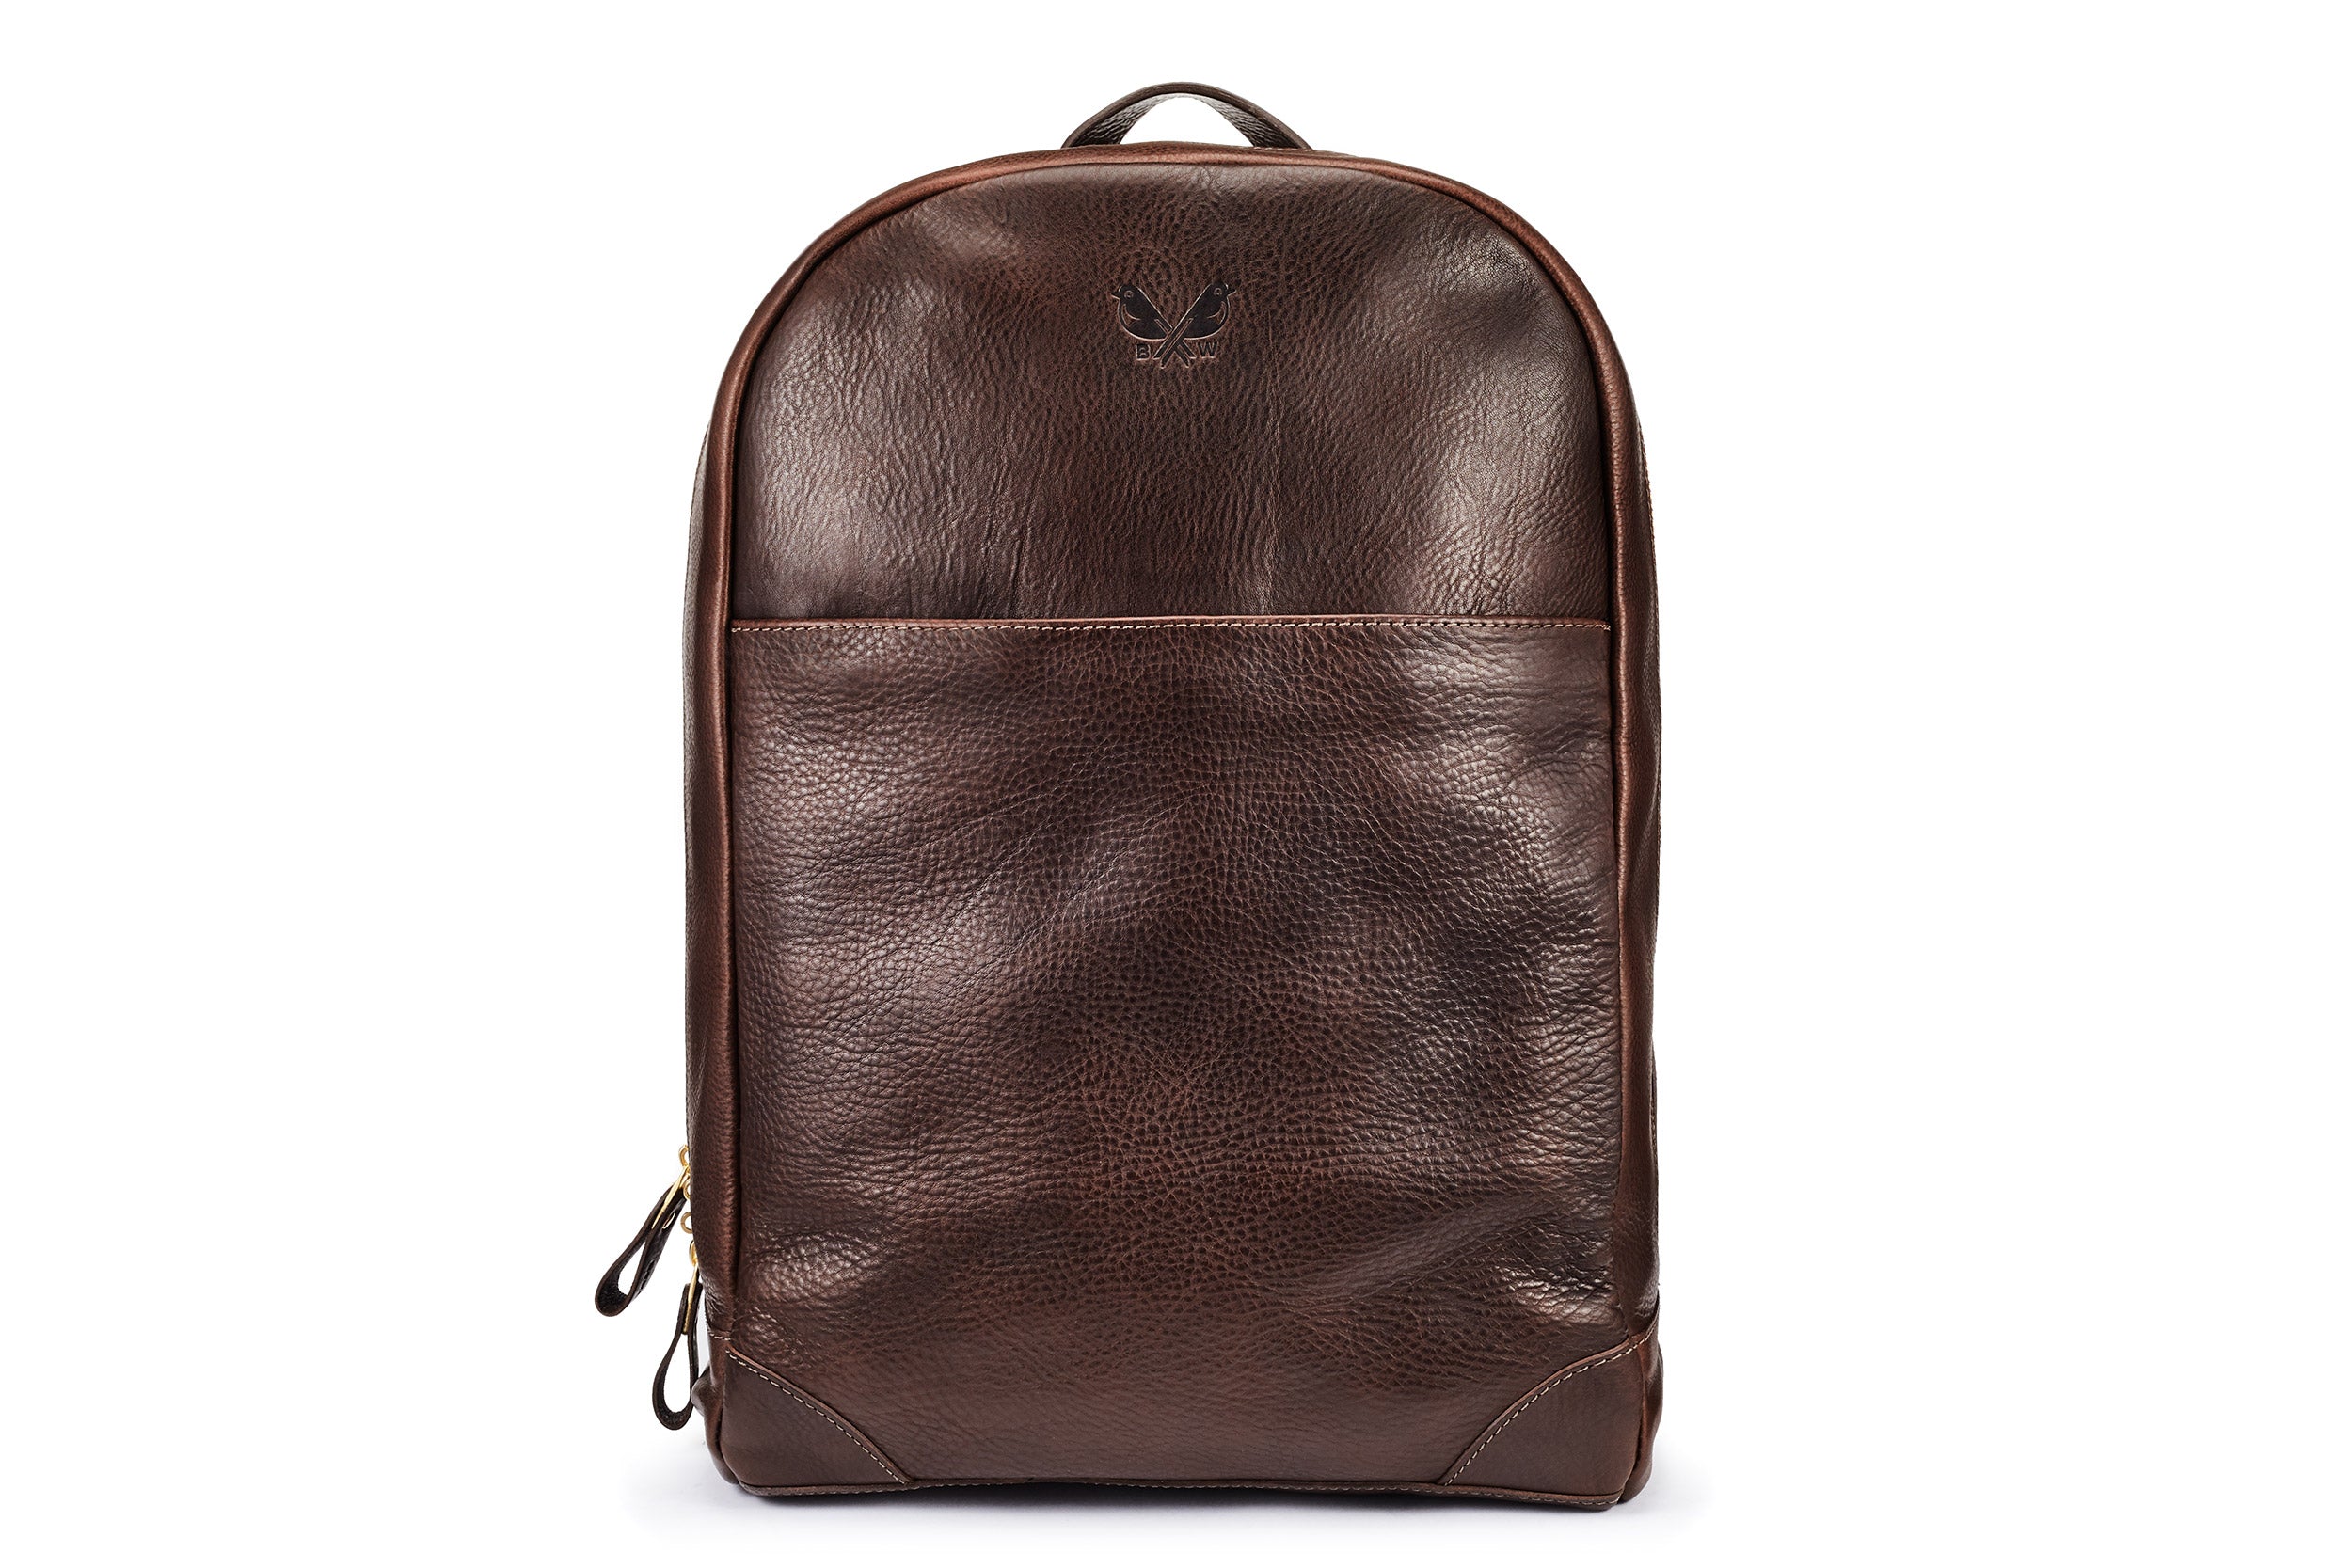 Full Grain Leather Backpack Purse, Designer Backpack, Natural